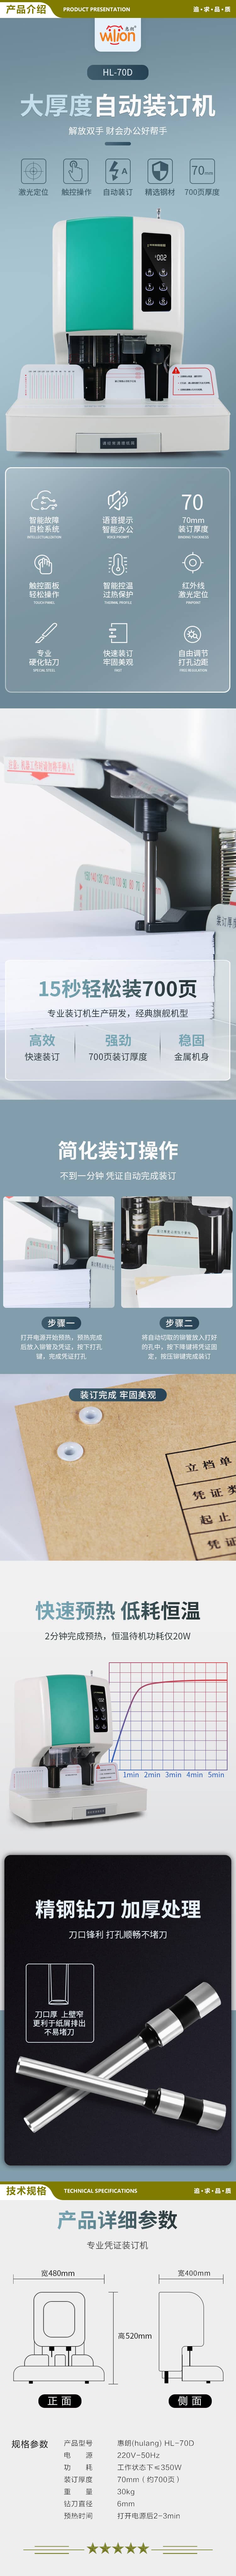 惠朗 huilang 70D 自动财务凭证装订机 70mm 大厚度  2.jpg